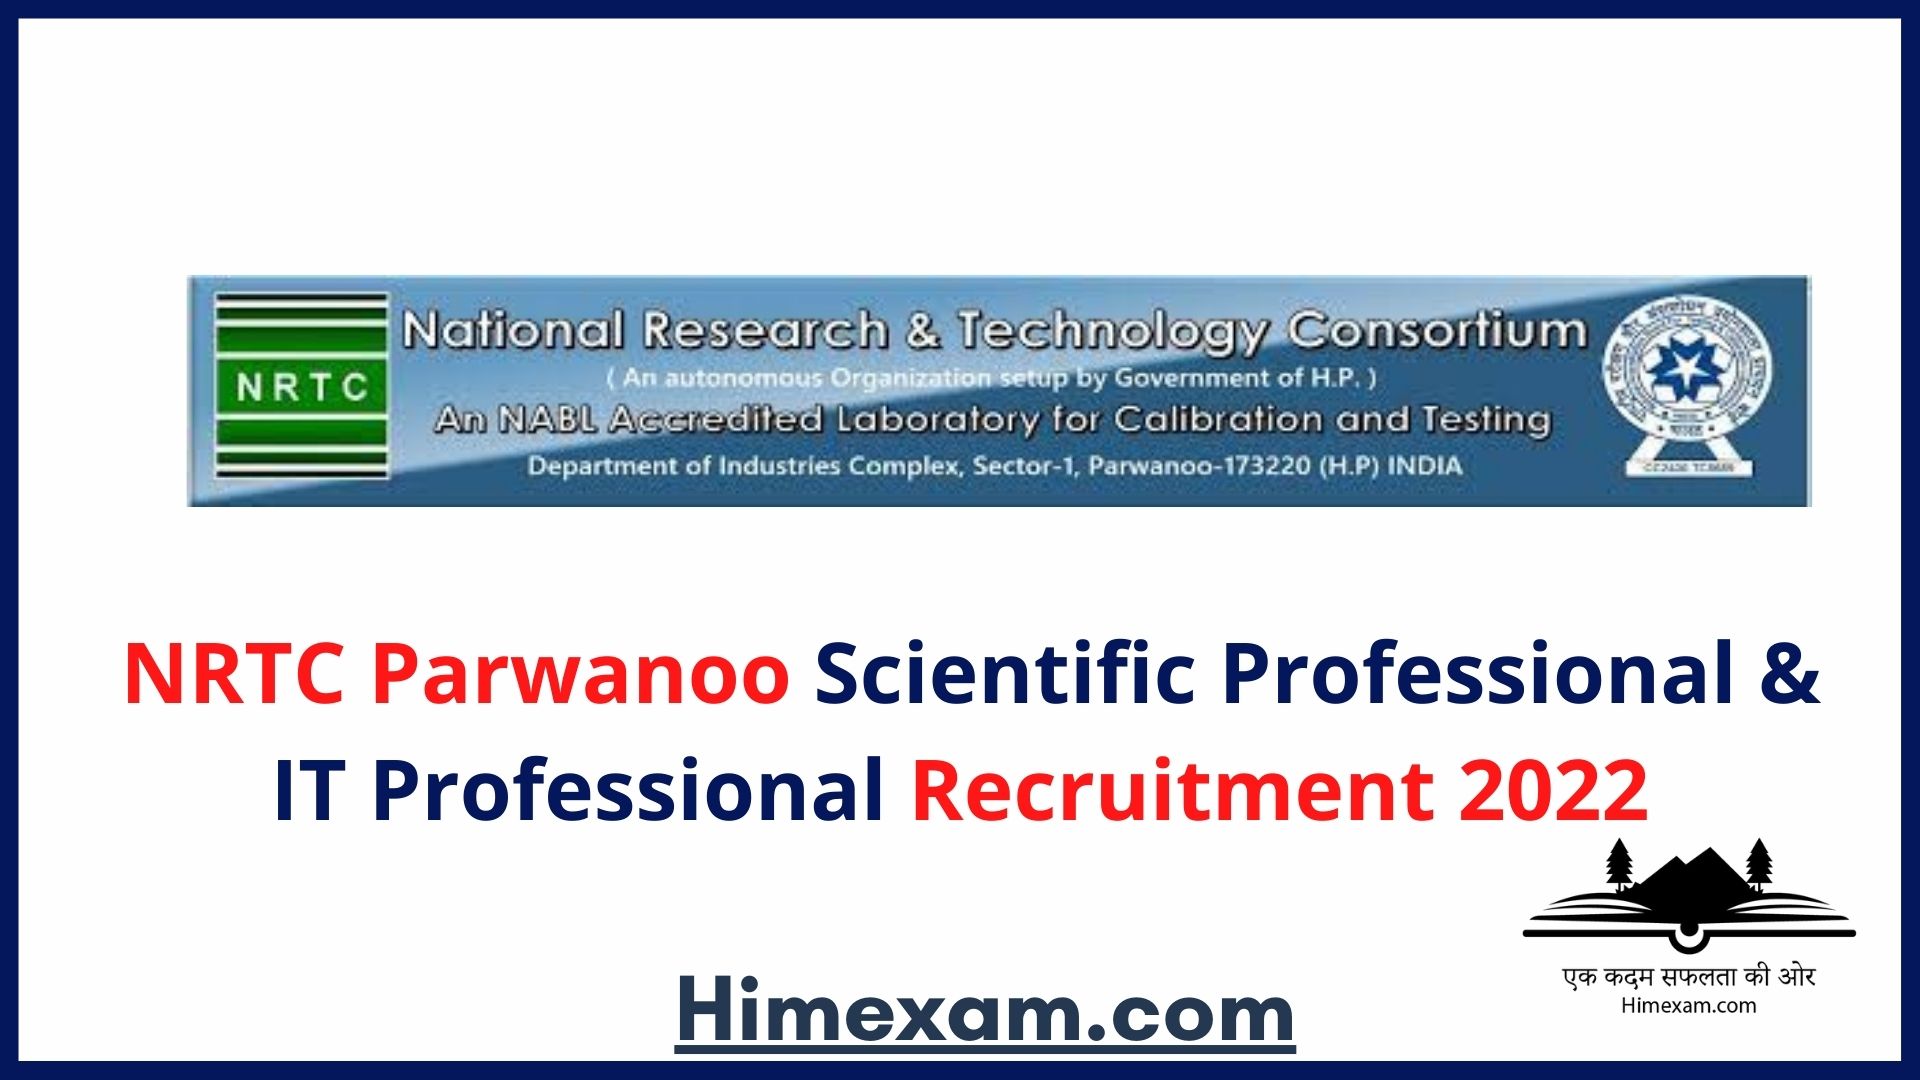 NRTC Parwanoo Scientific Professional & IT Professional Recruitment 2022